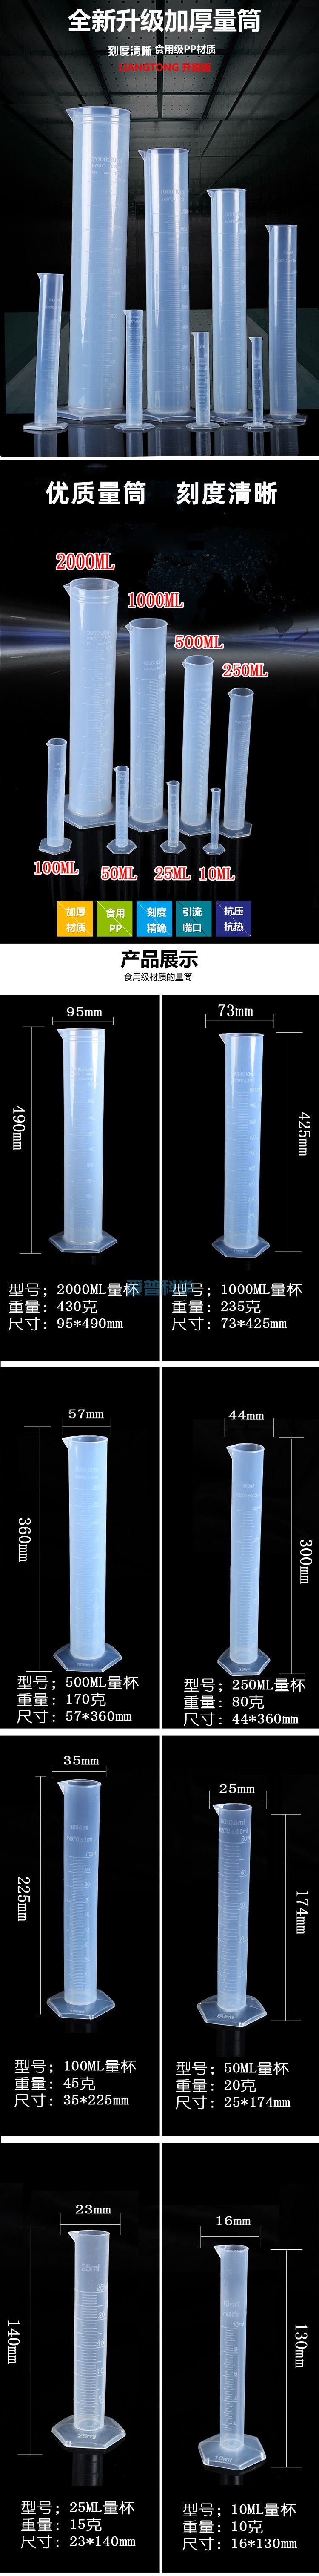 100ml六角塑料量筒,PP,耐高温防腐蚀(图1)